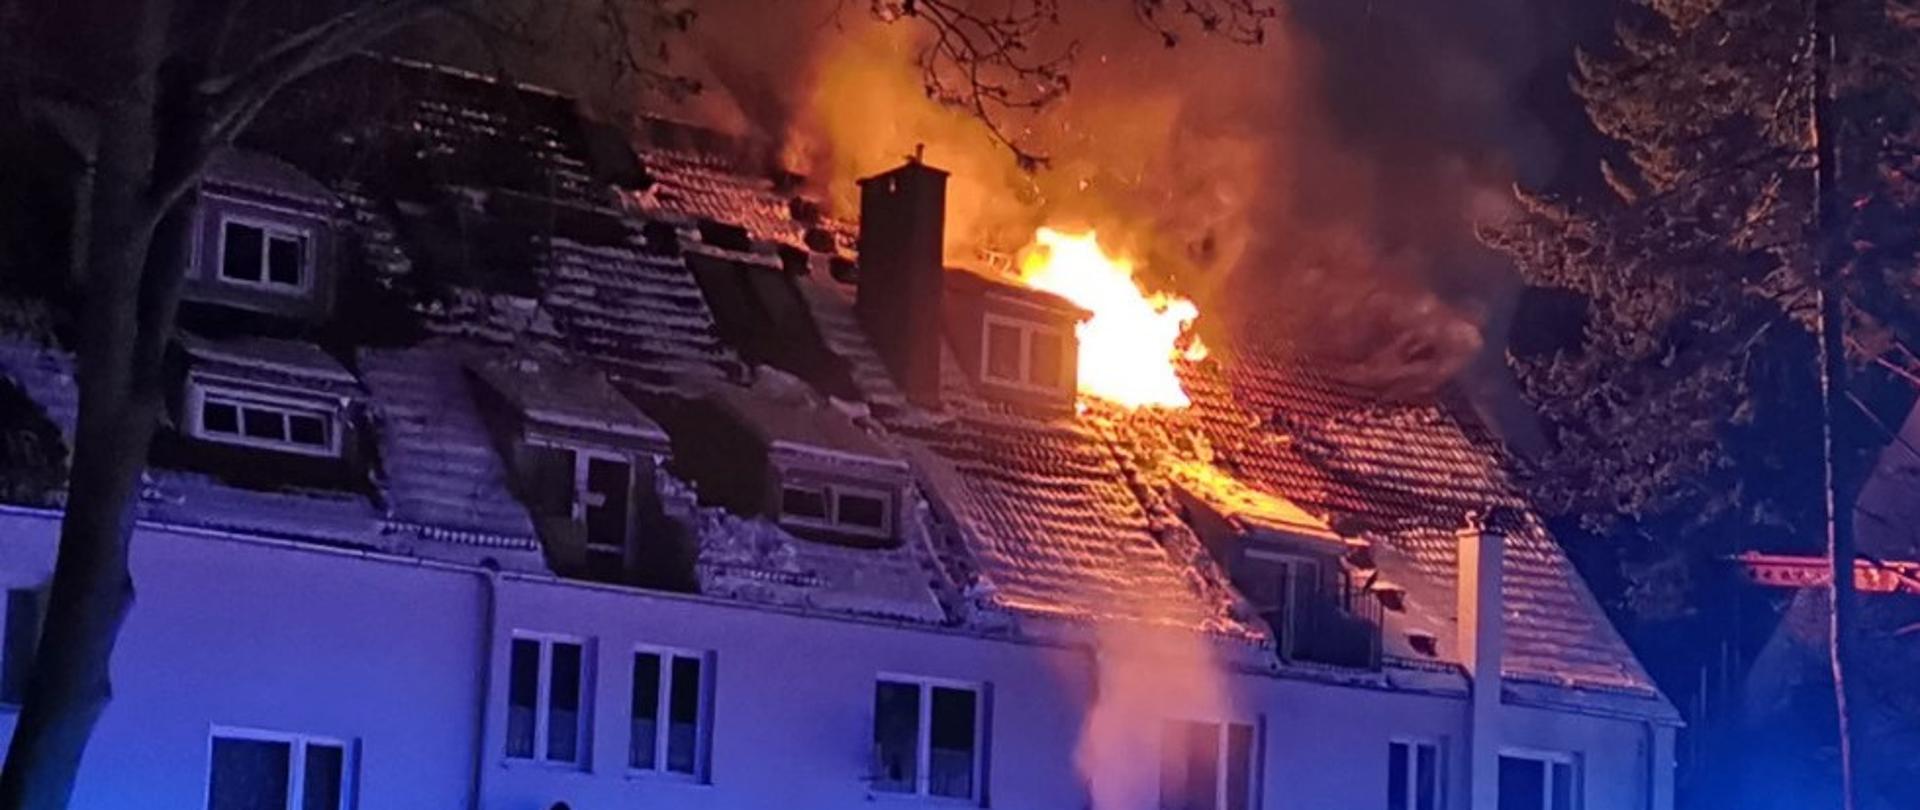 Dach budynku mieszkalnego, widoczne płomienie wydobywające się z jednego z okien.